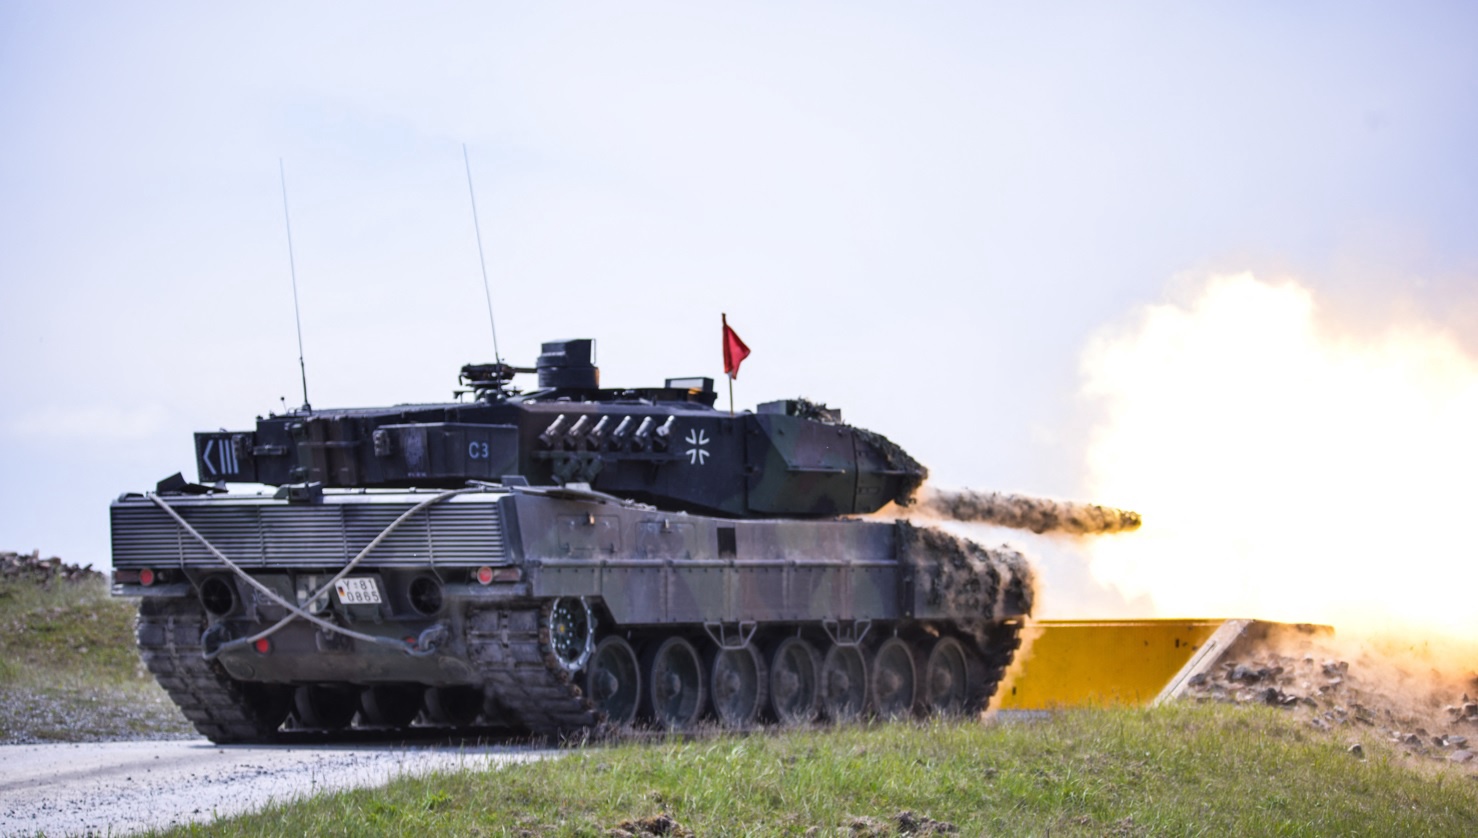 De zware gevechtstank Leopard 2 is bedoeld om overwicht te creëren op het slagveld. 